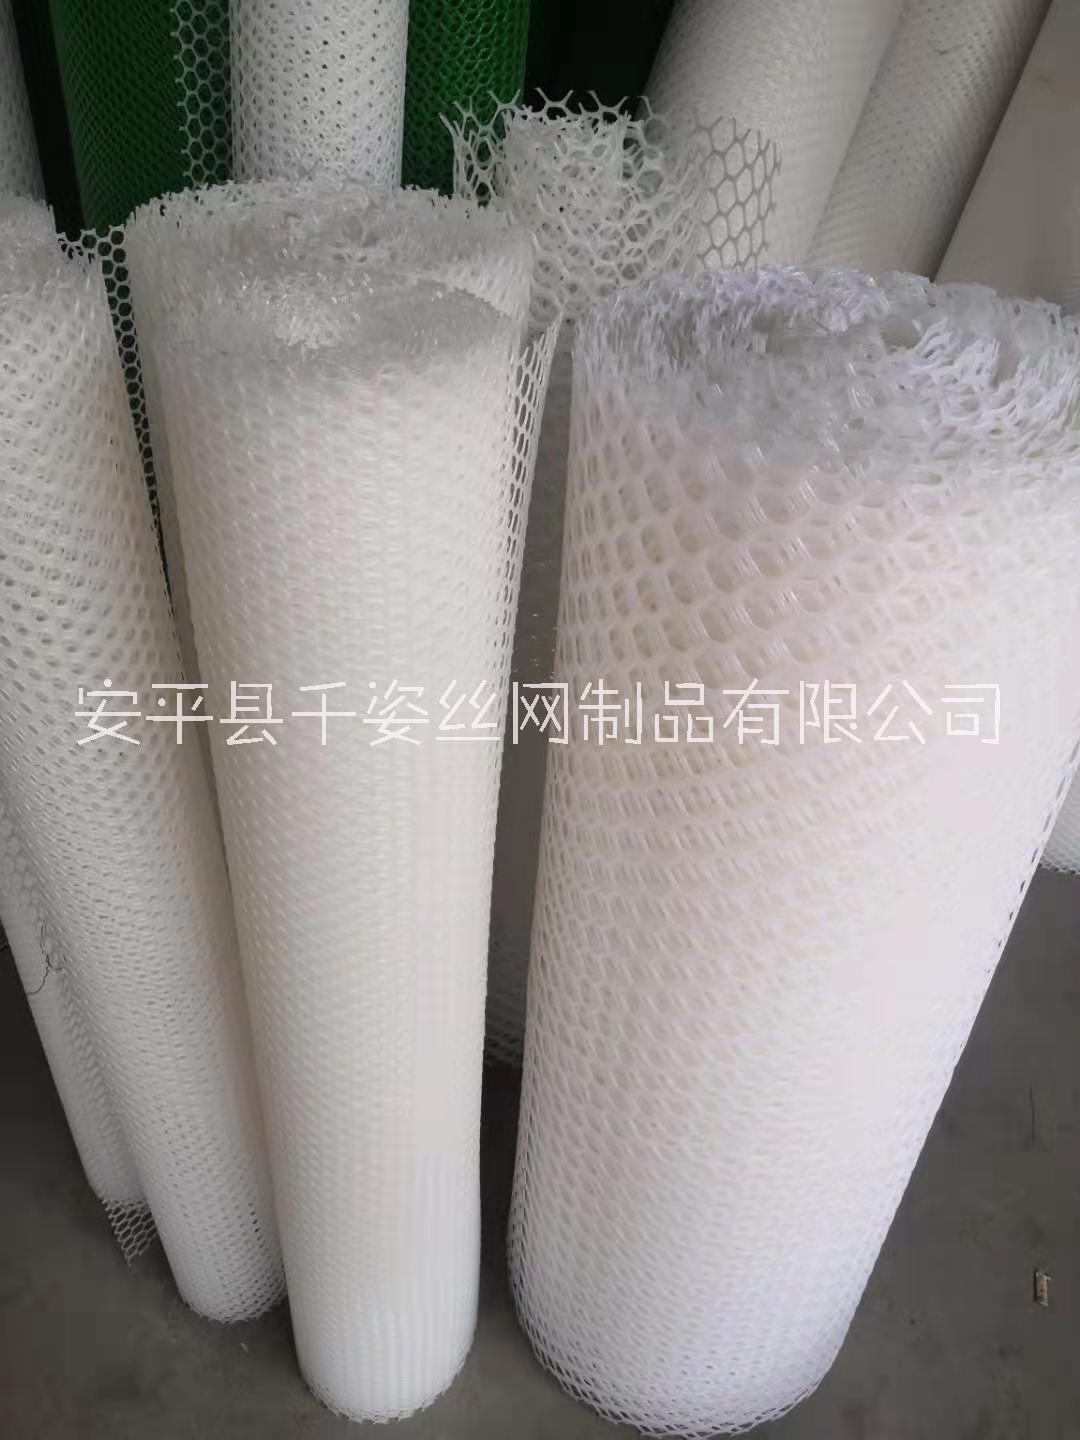 塑料网厂家广东塑料网厂家供应价格实惠加工定做联系电话